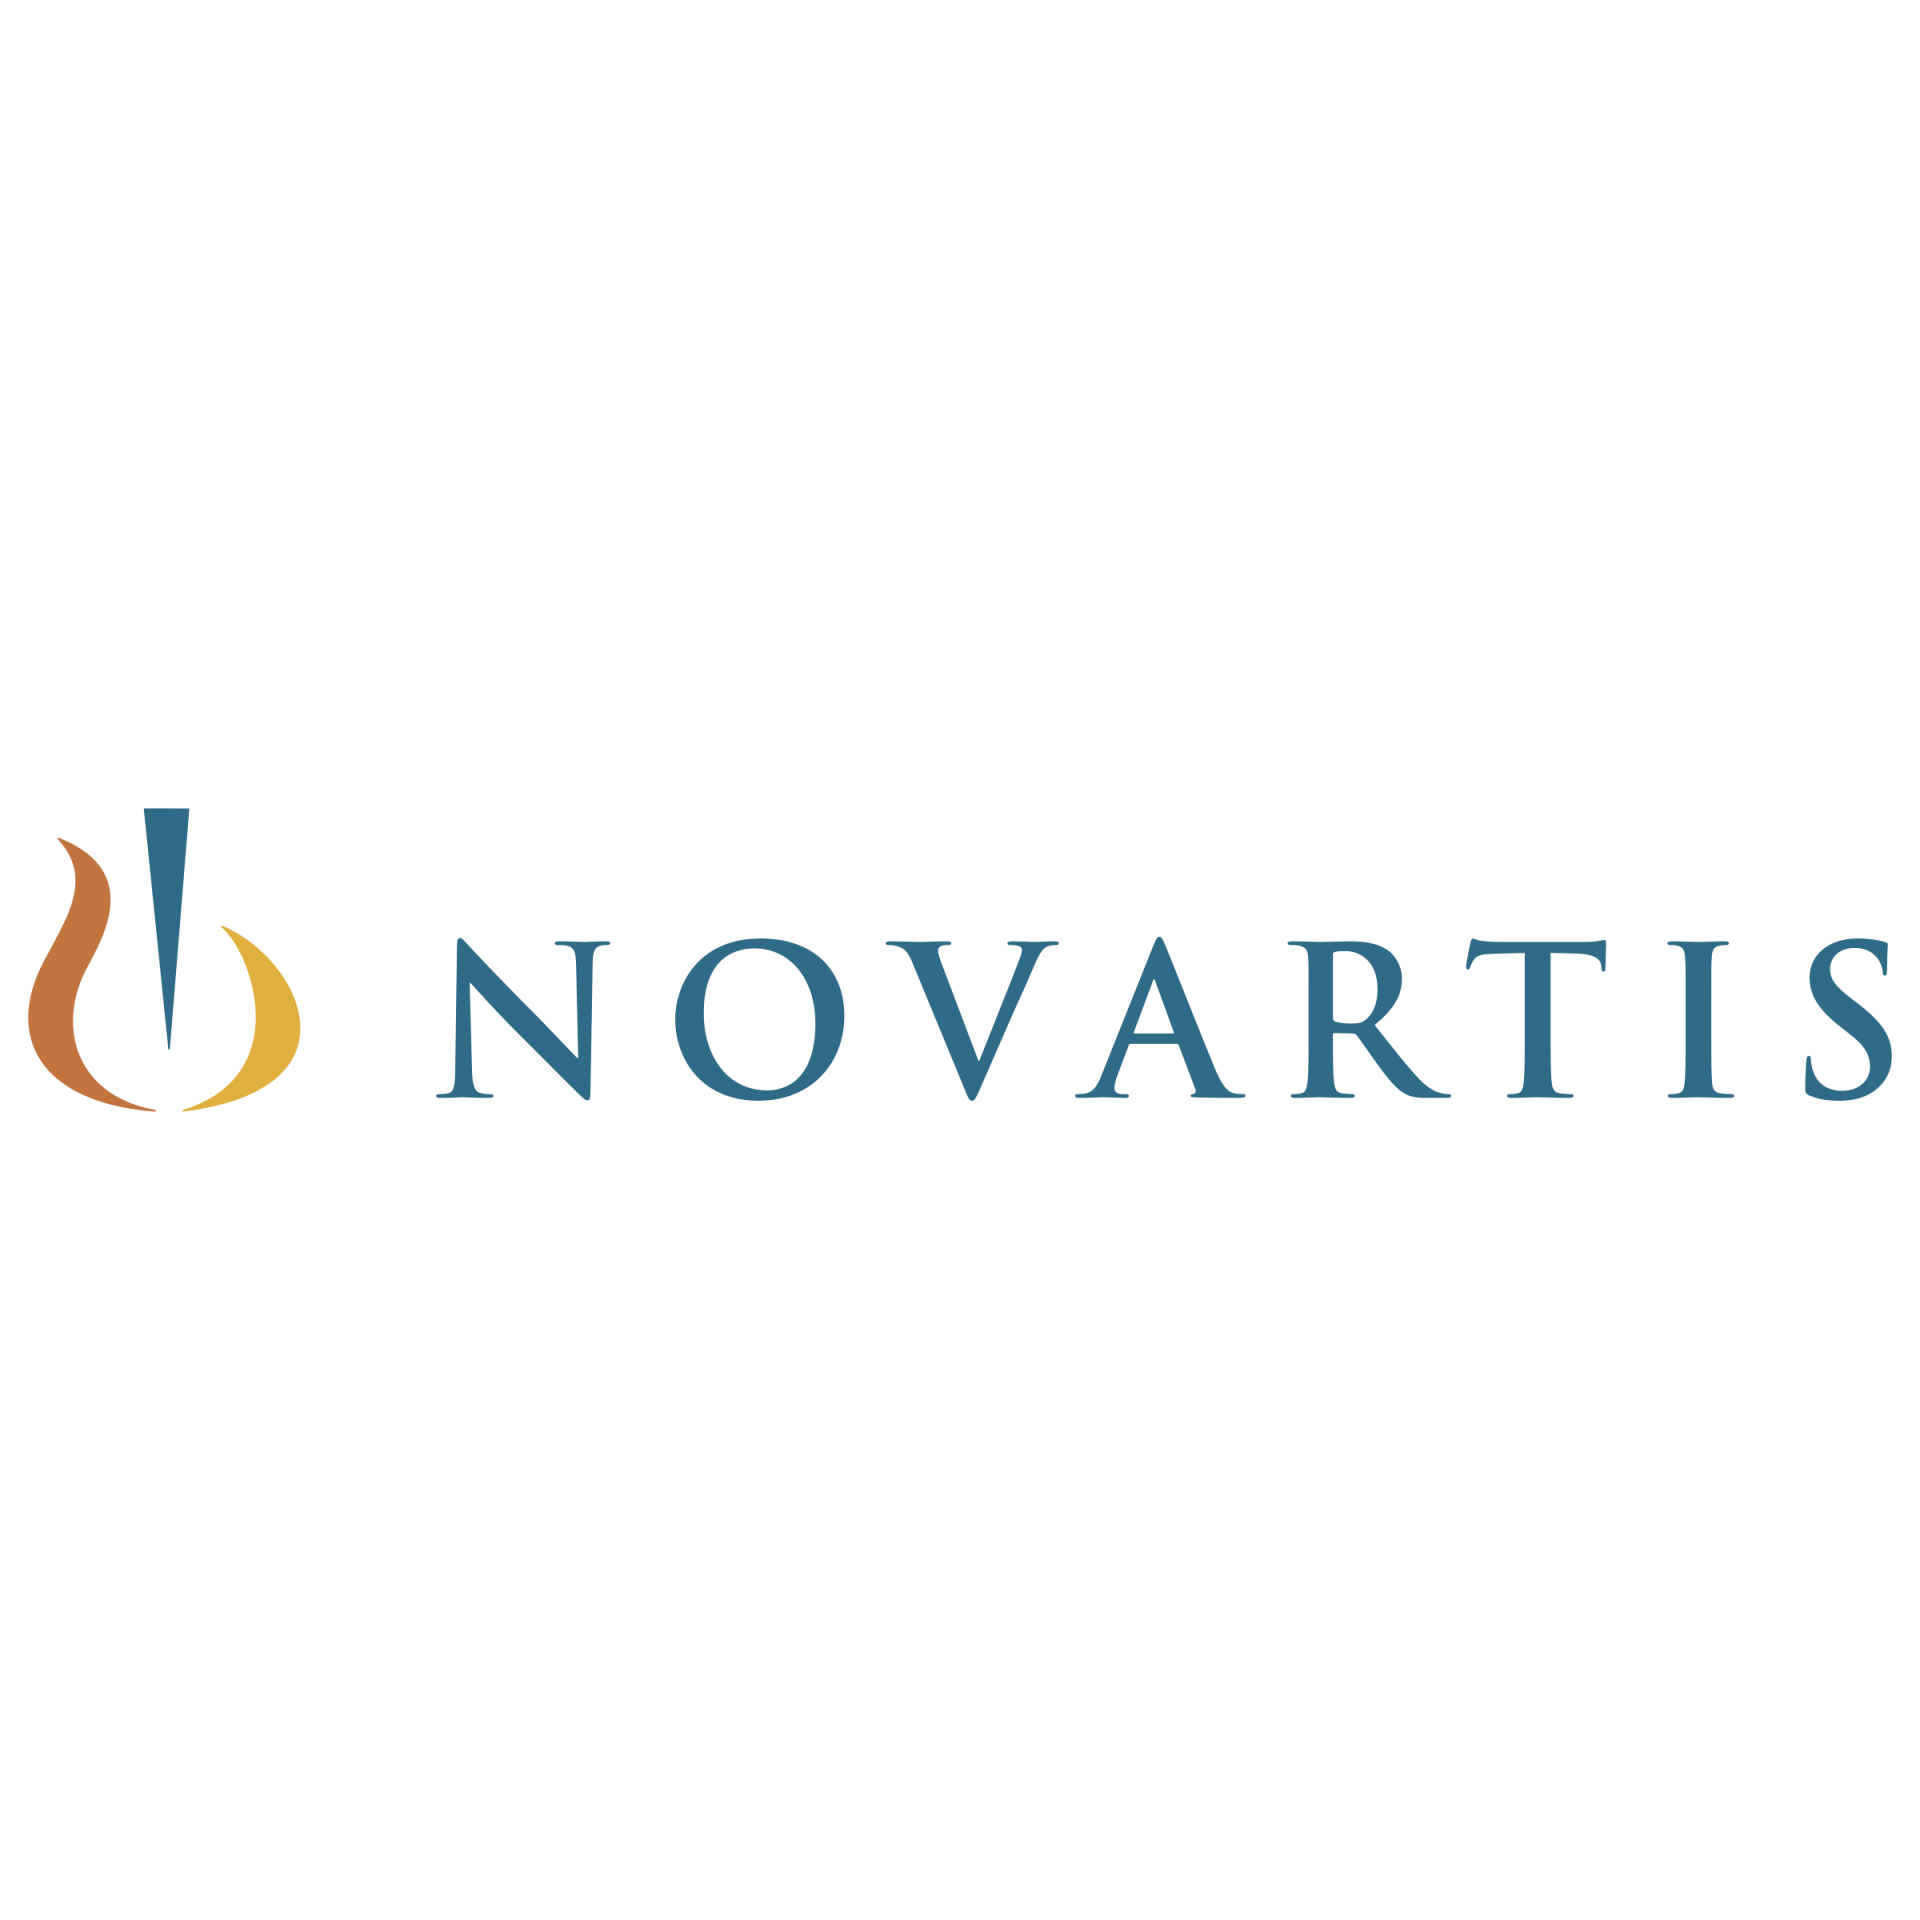 novartis-1-logo-png-transparent-1920x1920